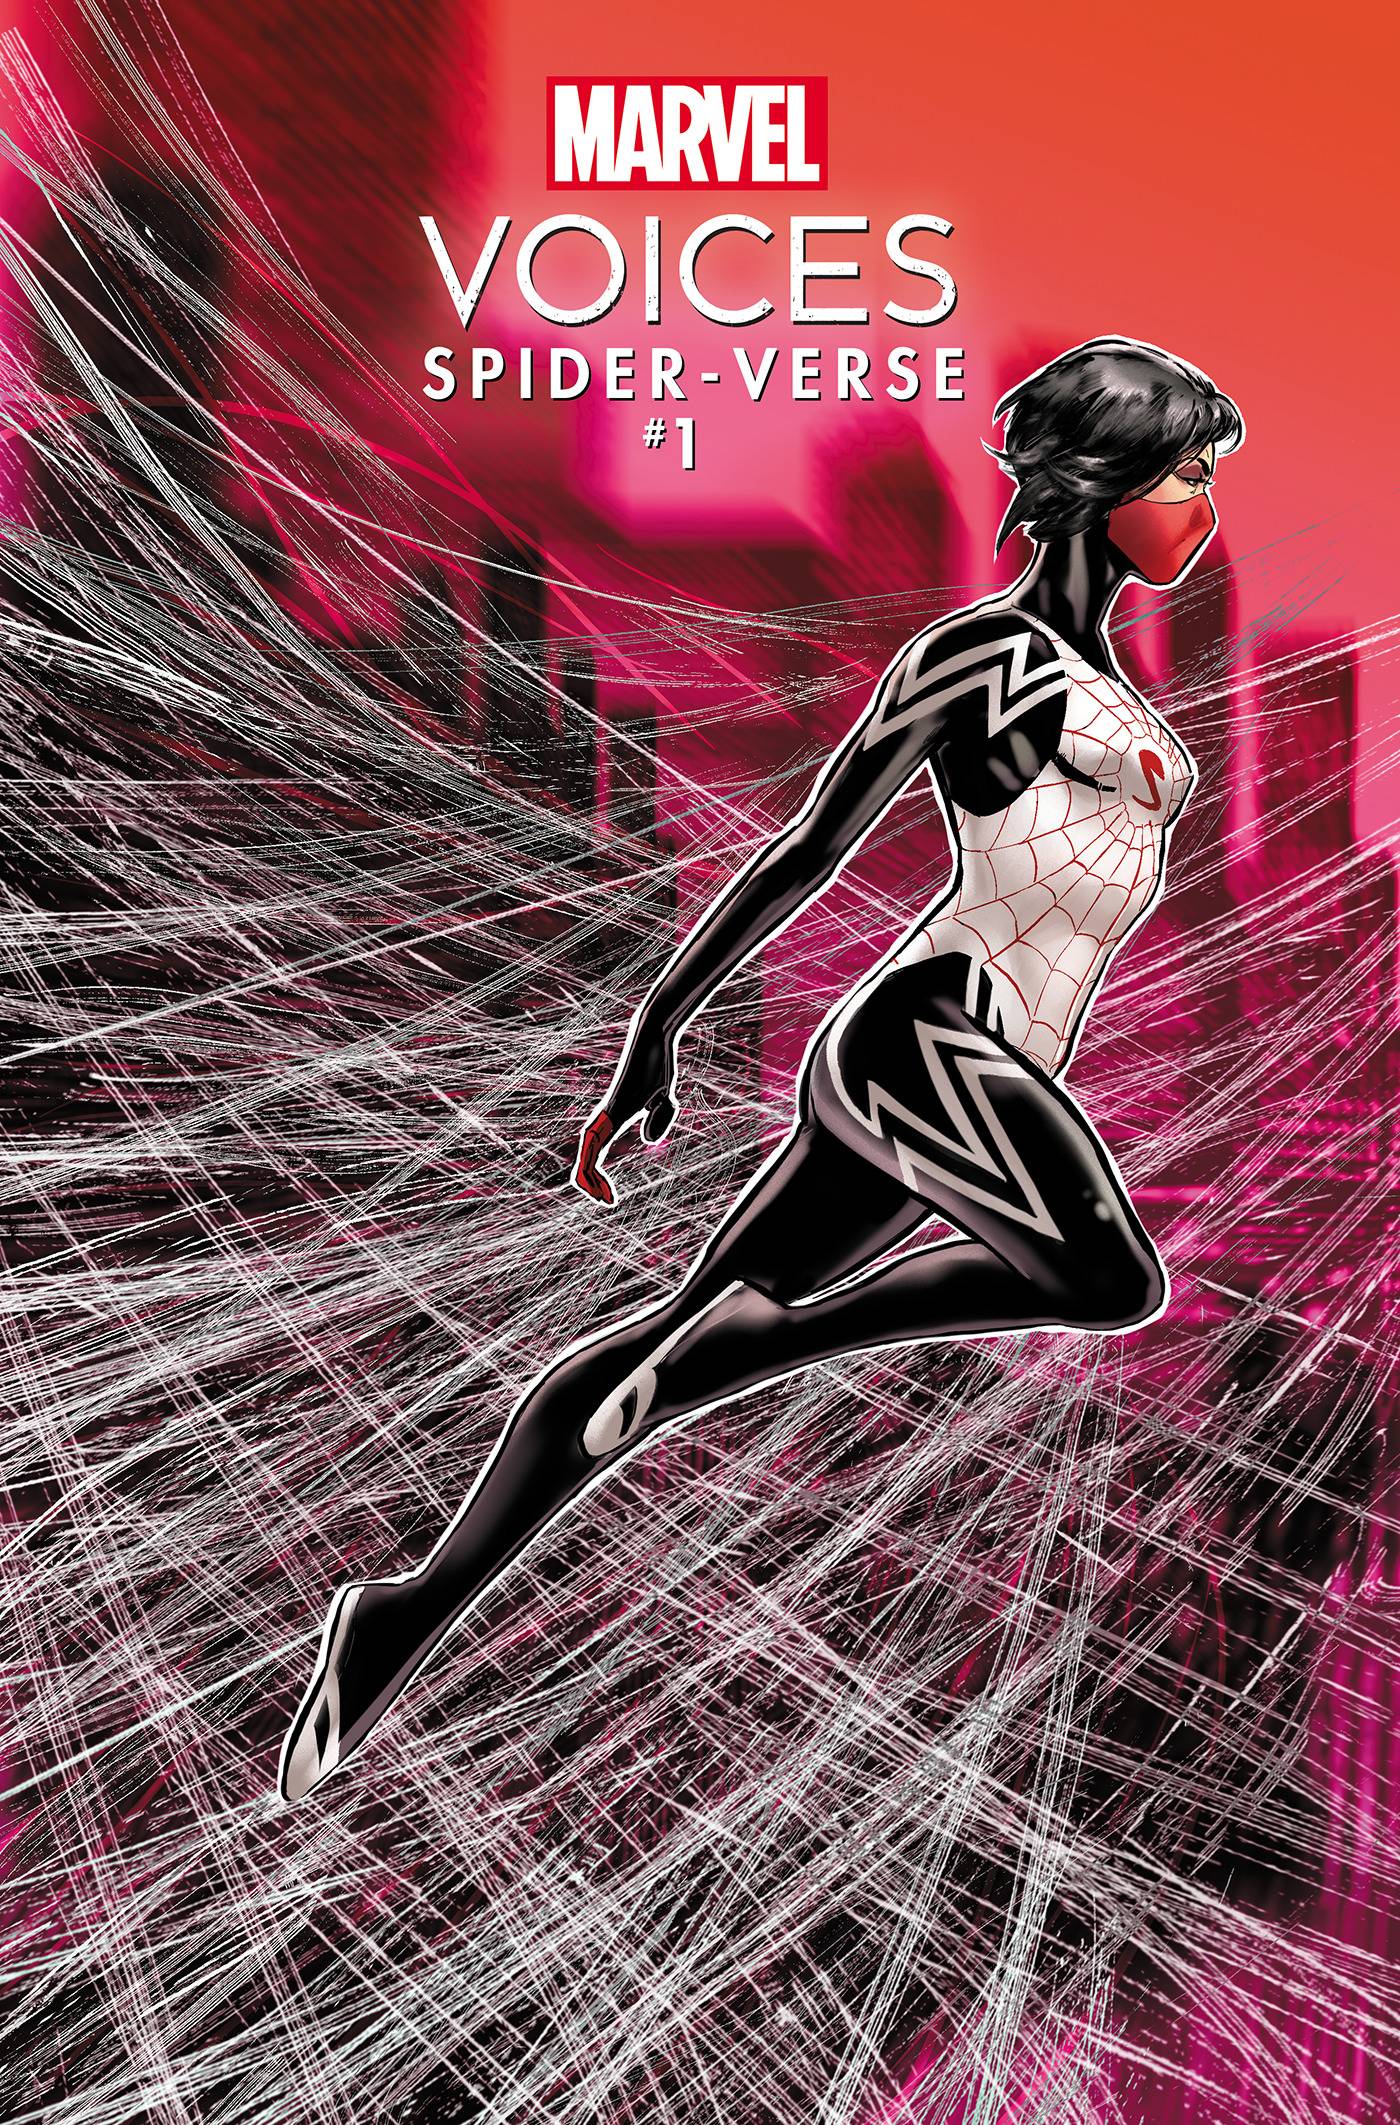 Marvel's voices spider-verse #1